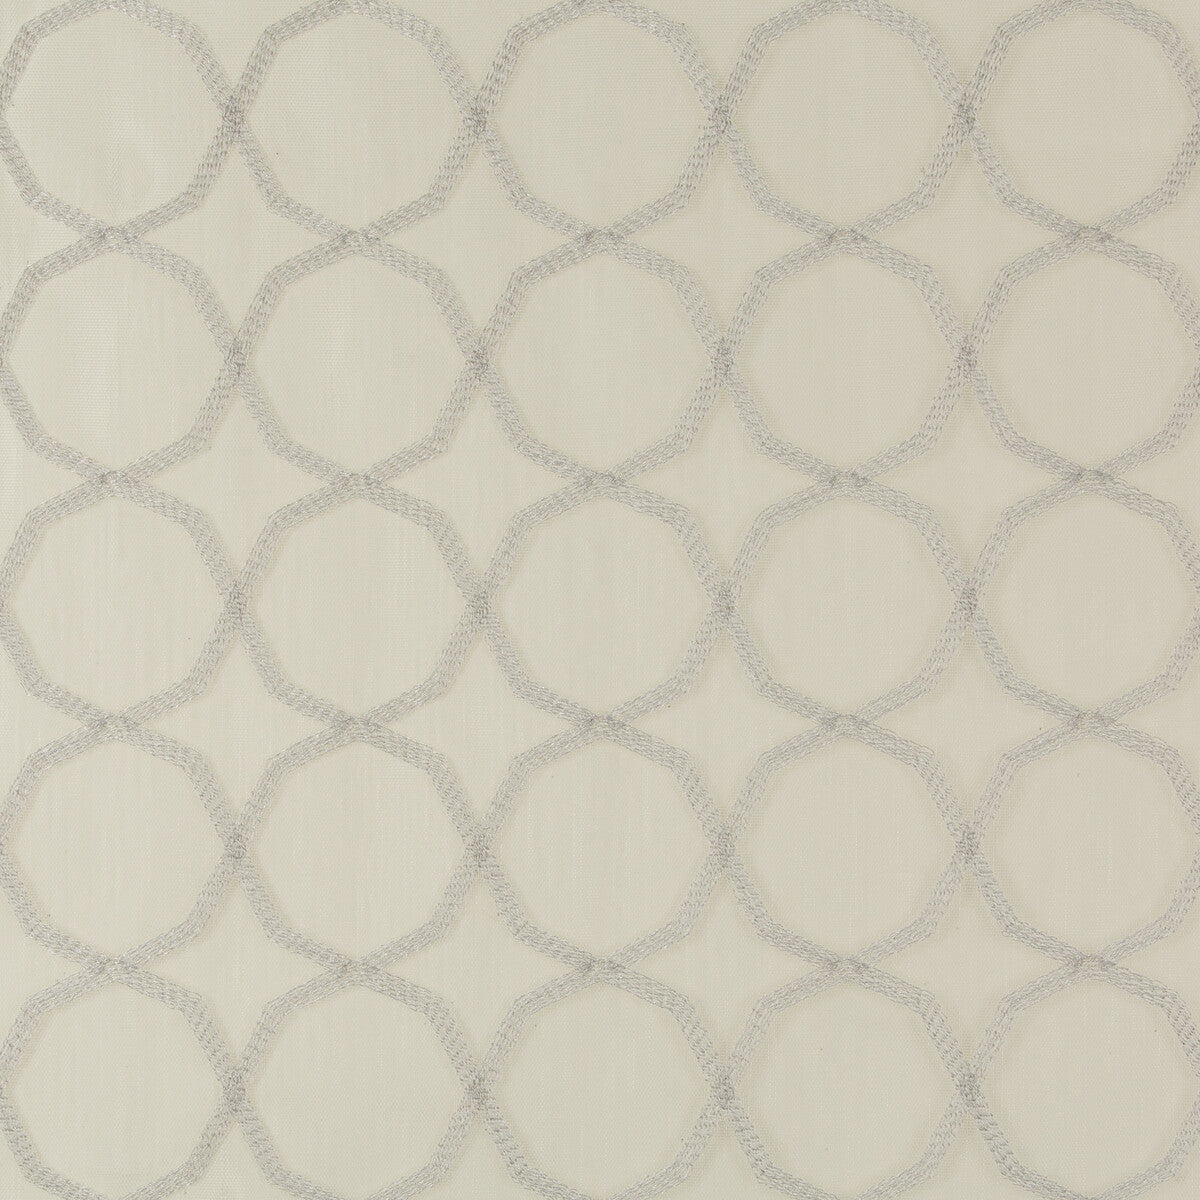 Kravet Basics fabric in 4714-11 color - pattern 4714.11.0 - by Kravet Basics